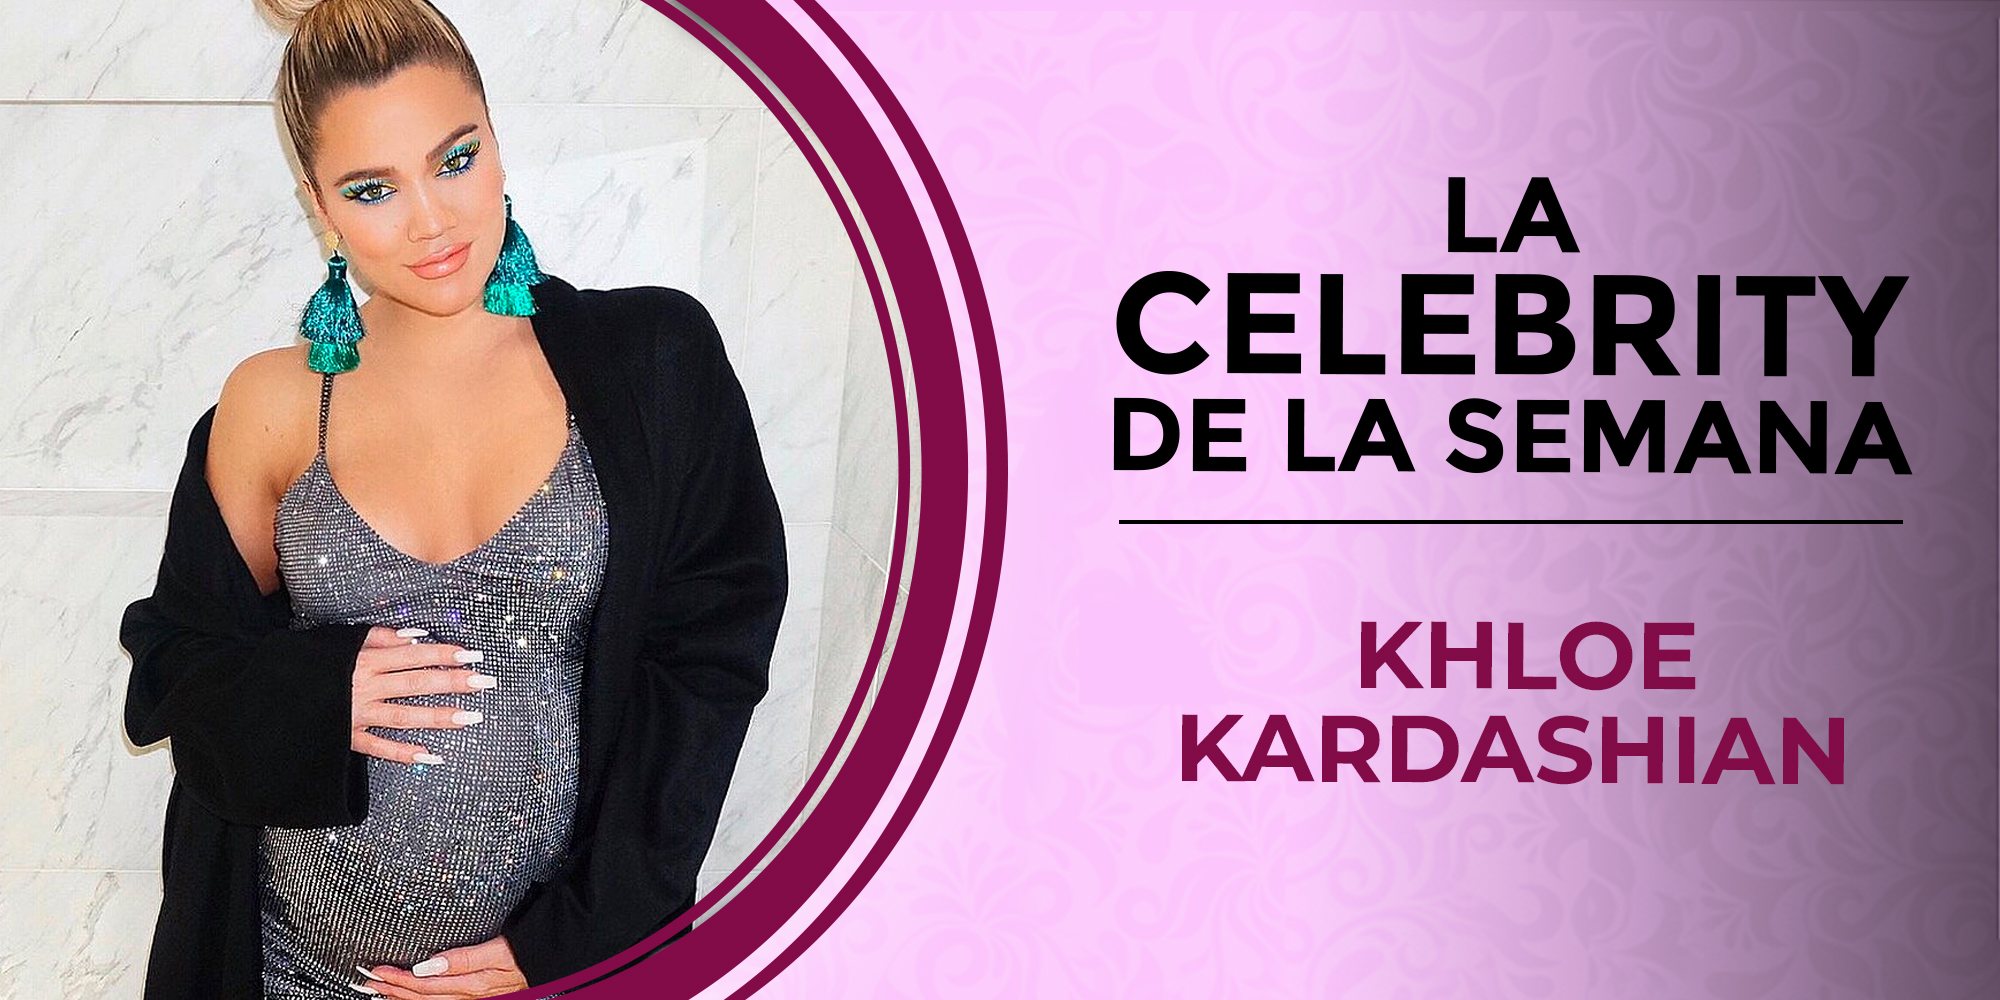 Khloe Kardashian, la celeb de la semana ha pasado los mejores y peores días de su vida